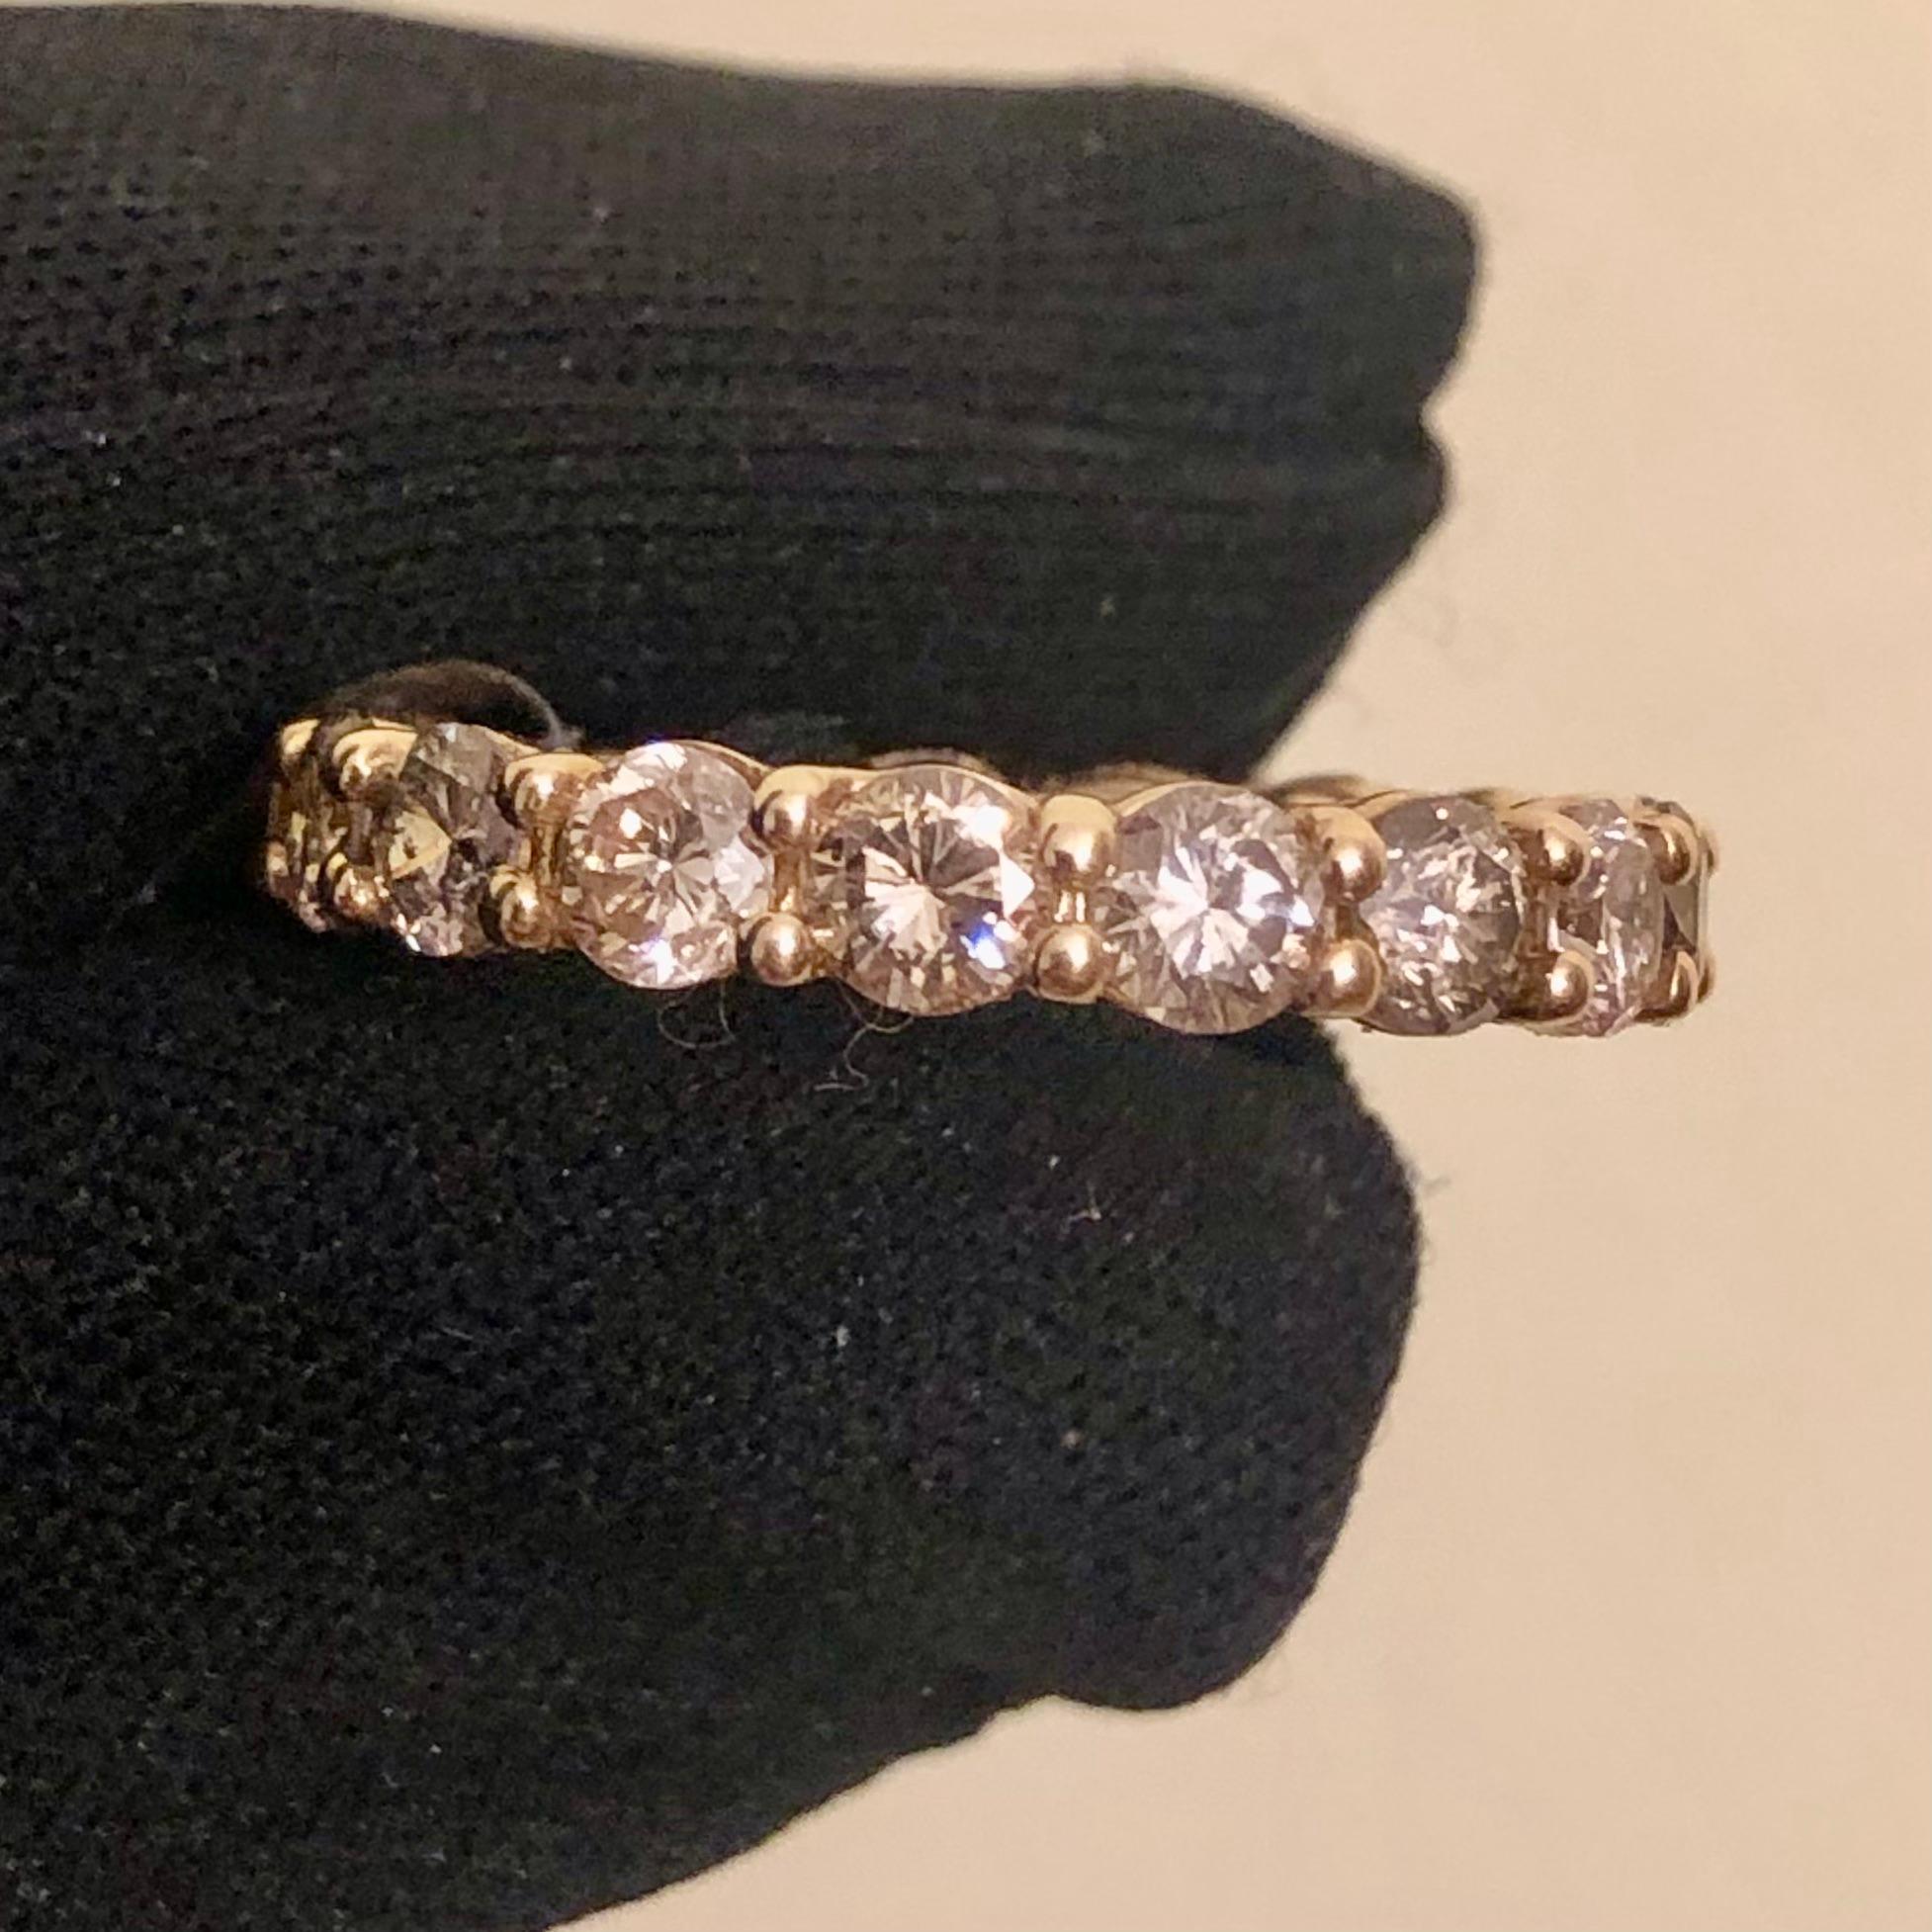 3/4 carat solitaire diamond ring